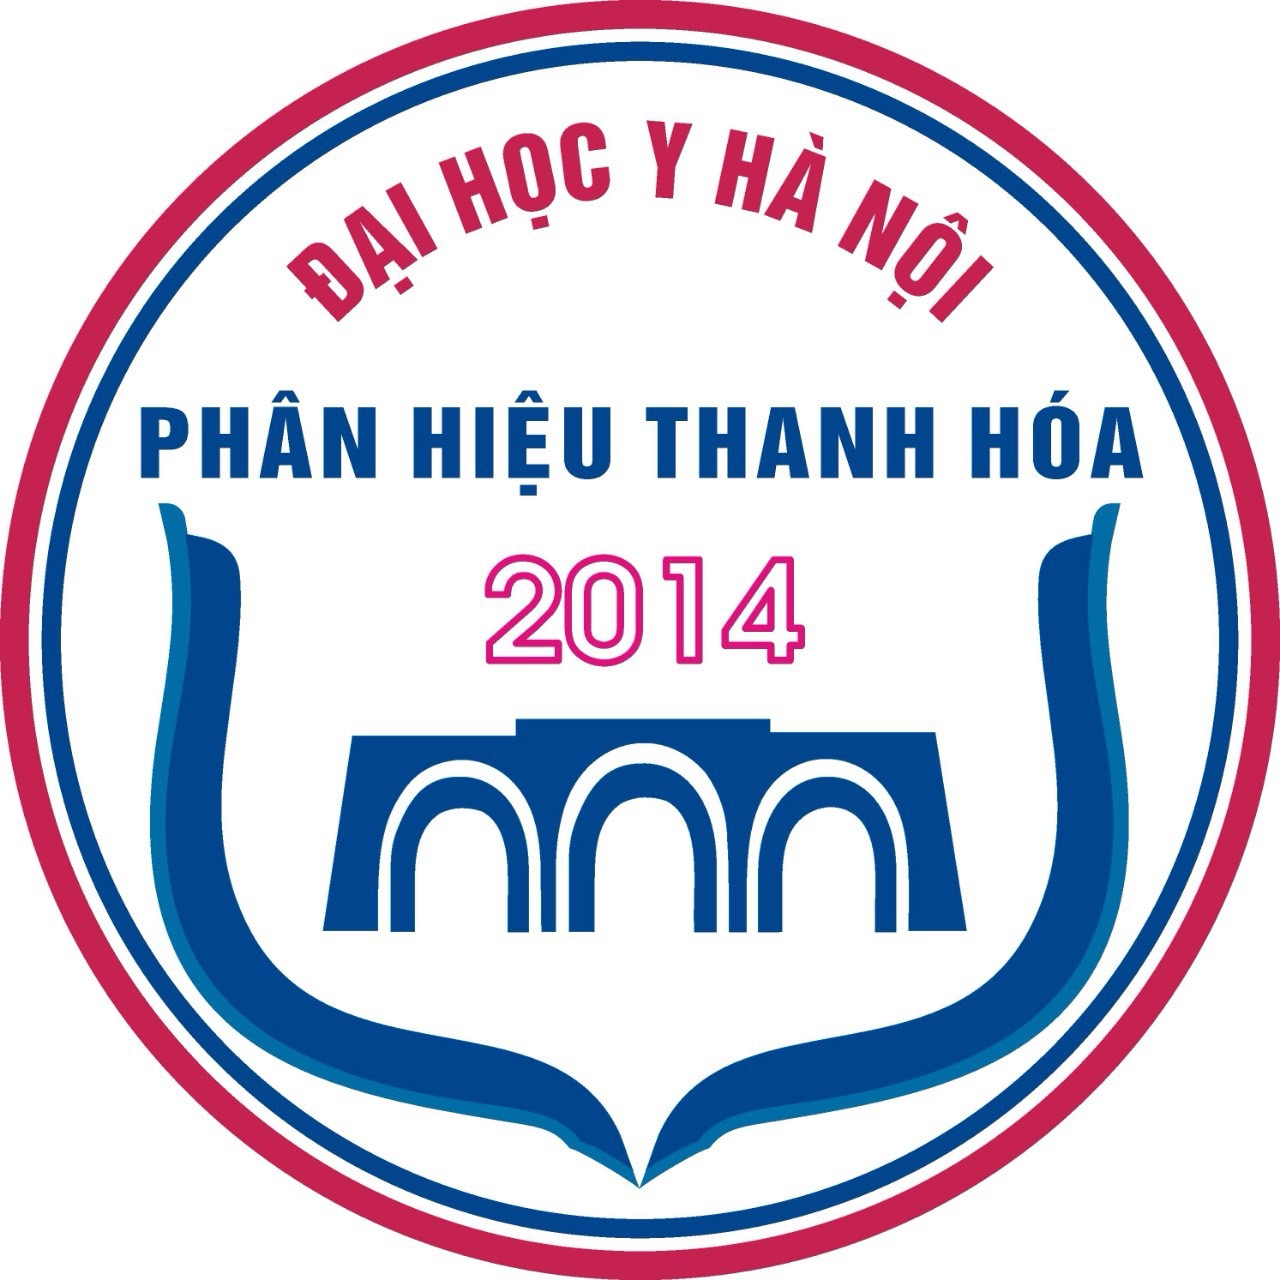 Đại học Y Hà Nội - Phân hiệu Thanh Hoá